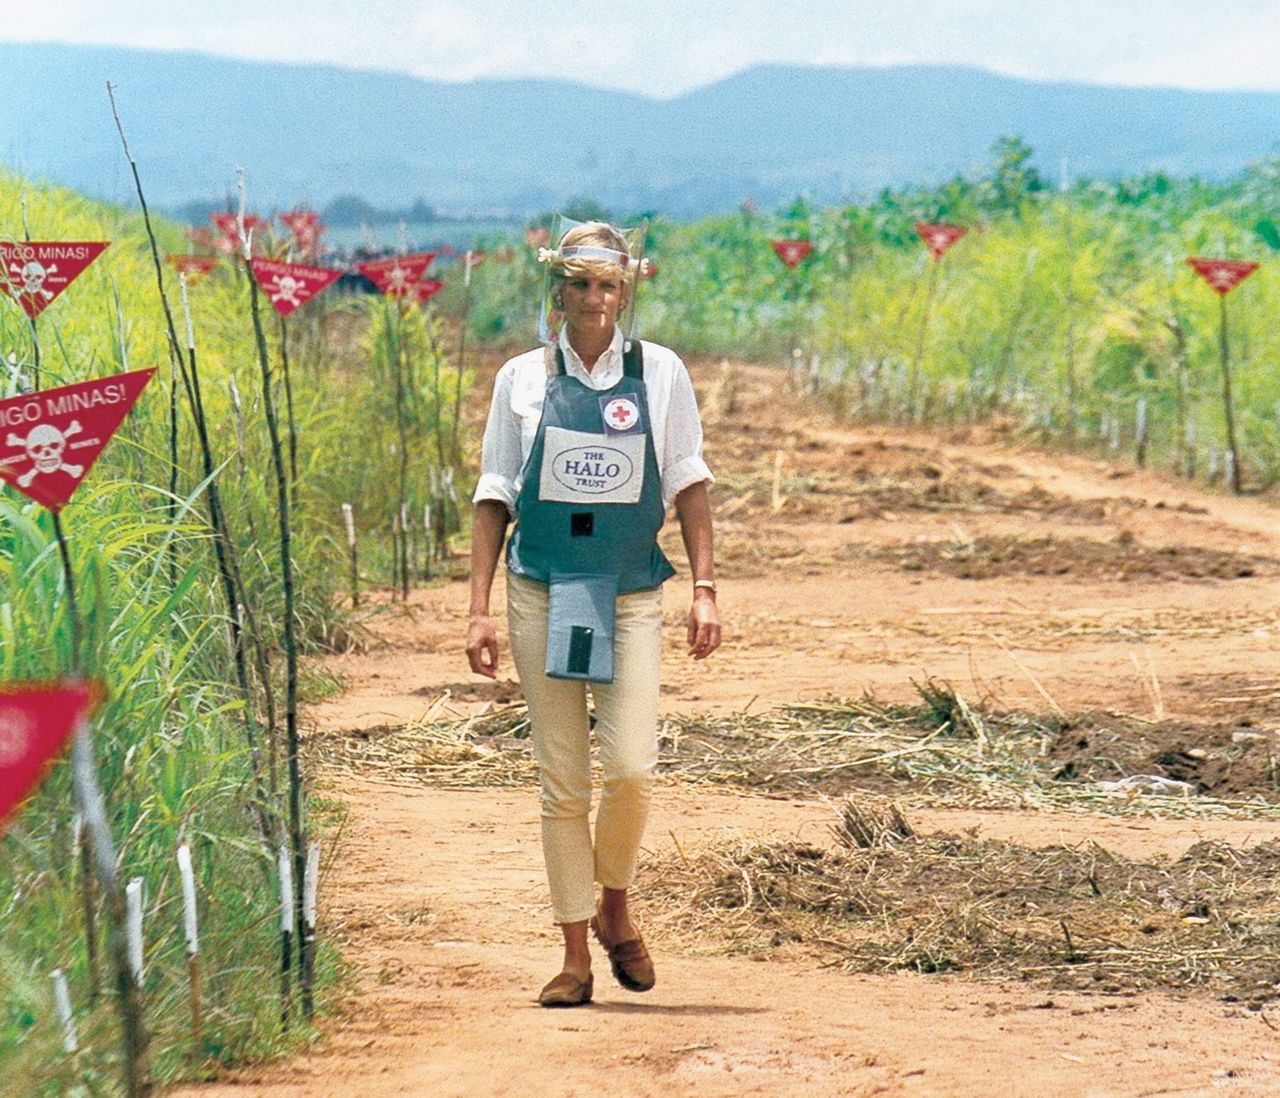 Księżna Diana wzięła udział w projekcie „The HALO Trust" i przeszła po zaminowanym polu w Angoli. W ten sposób chciała zwrócić na problem min, w których wybuchach ranni zostają nie tylko wojskowi, ale też cywile (fot. ONS)